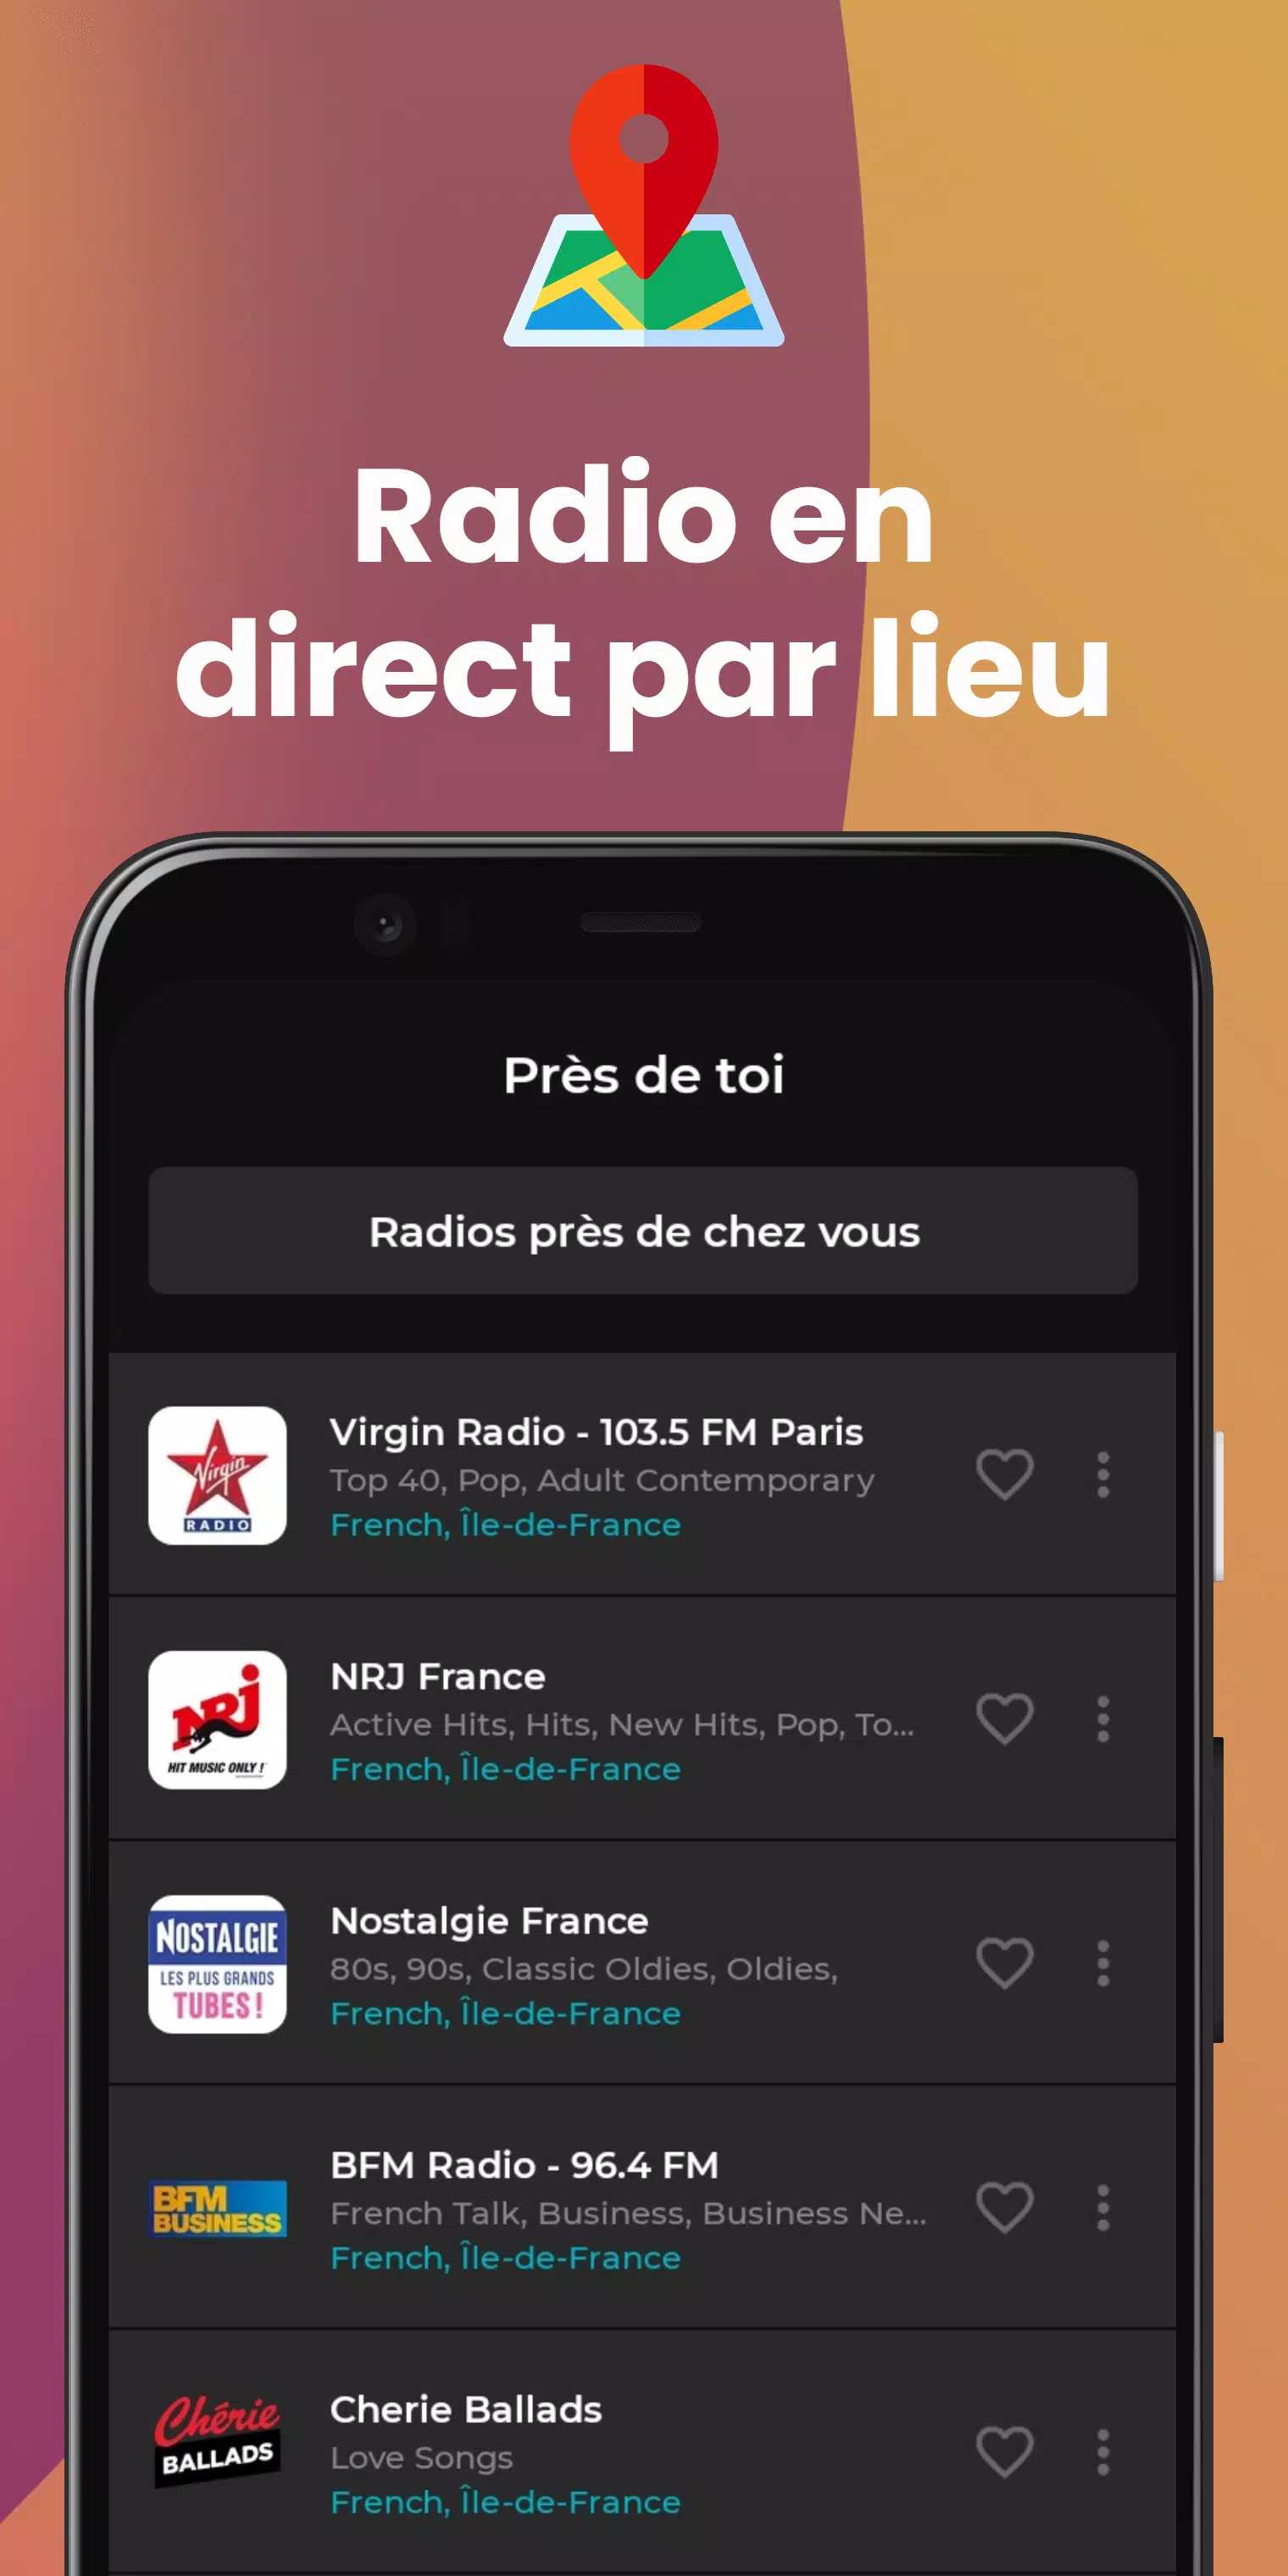 Radio FM: AM, FM & Tuner Radio APK pour Android Télécharger